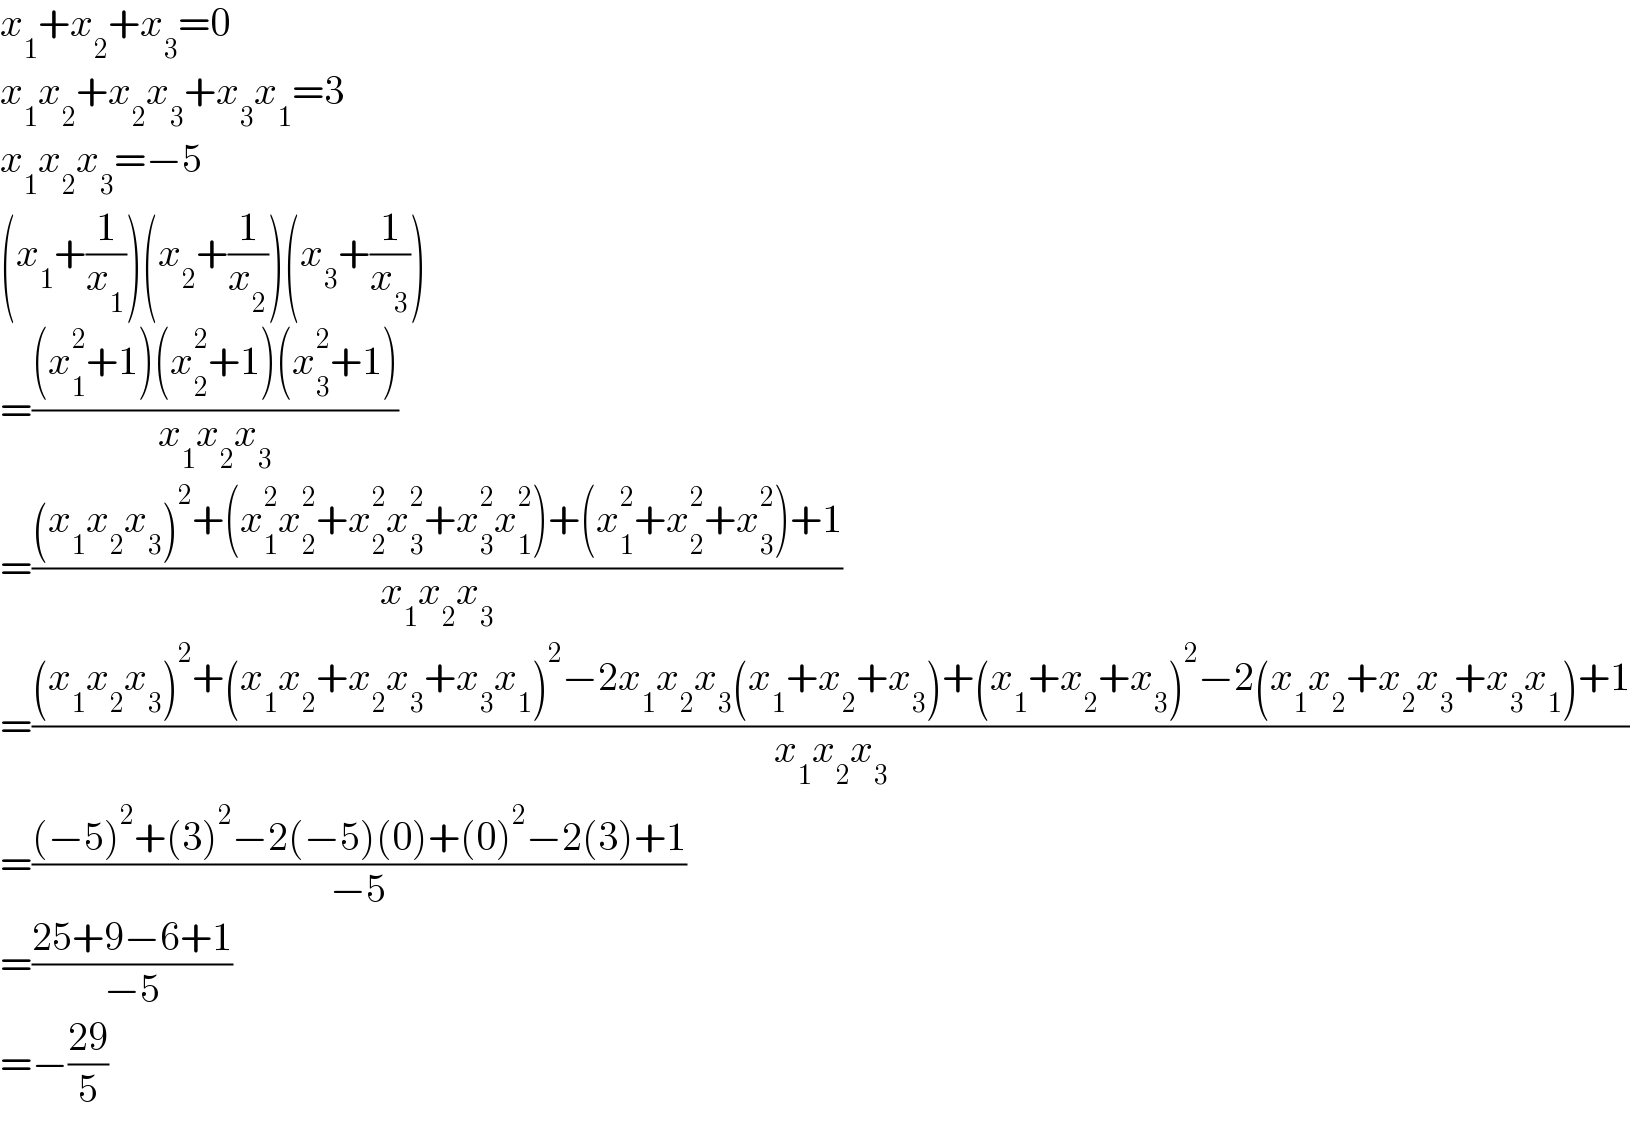 x_1 +x_2 +x_3 =0  x_1 x_2 +x_2 x_3 +x_3 x_1 =3  x_1 x_2 x_3 =−5  (x_1 +(1/x_1 ))(x_2 +(1/x_2 ))(x_3 +(1/x_3 ))  =(((x_1 ^2 +1)(x_2 ^2 +1)(x_3 ^2 +1))/(x_1 x_2 x_3 ))  =(((x_1 x_2 x_3 )^2 +(x_1 ^2 x_2 ^2 +x_2 ^2 x_3 ^2 +x_3 ^2 x_1 ^2 )+(x_1 ^2 +x_2 ^2 +x_3 ^2 )+1)/(x_1 x_2 x_3 ))  =(((x_1 x_2 x_3 )^2 +(x_1 x_2 +x_2 x_3 +x_3 x_1 )^2 −2x_1 x_2 x_3 (x_1 +x_2 +x_3 )+(x_1 +x_2 +x_3 )^2 −2(x_1 x_2 +x_2 x_3 +x_3 x_1 )+1)/(x_1 x_2 x_3 ))  =(((−5)^2 +(3)^2 −2(−5)(0)+(0)^2 −2(3)+1)/(−5))  =((25+9−6+1)/(−5))  =−((29)/5)  